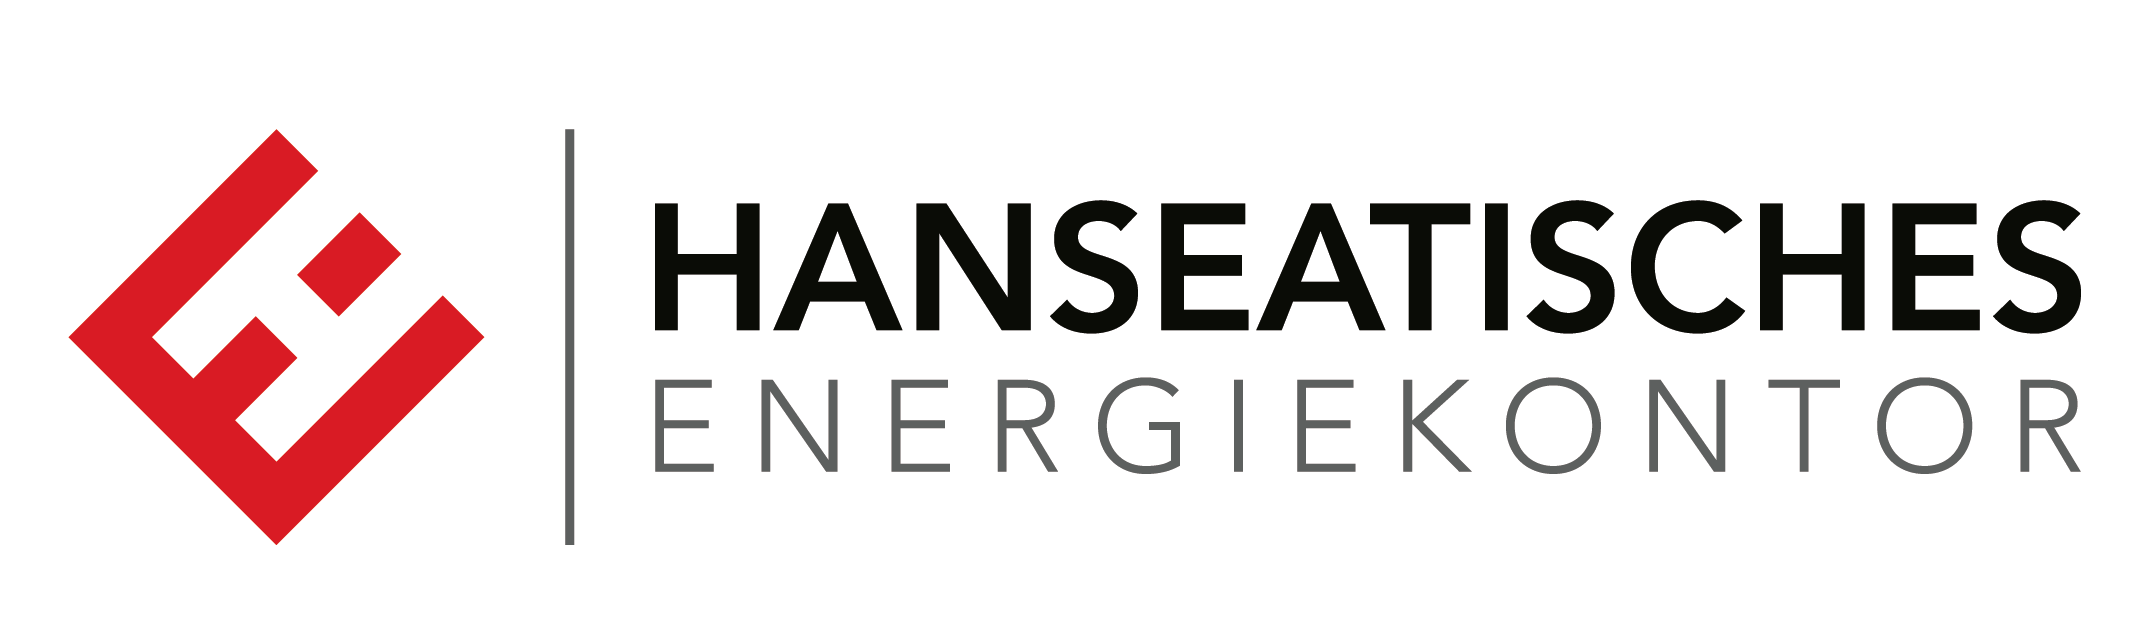 Hanseatisches Energiekontor